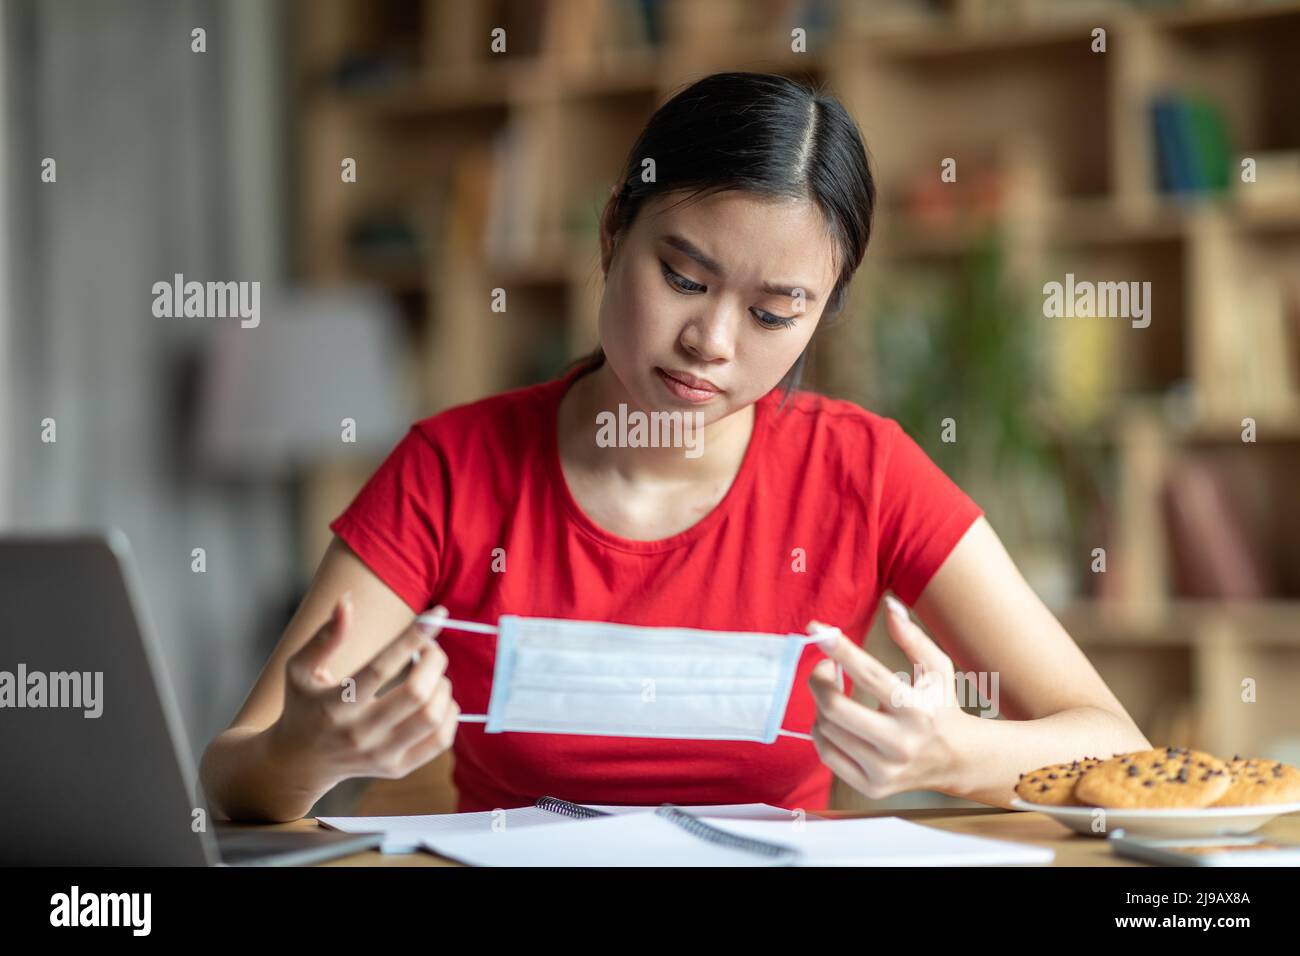 Triste jeune asiatique regarder le masque de protection dans les mains, s'asseoir à la table avec ordinateur portable dans le salon intérieur Banque D'Images